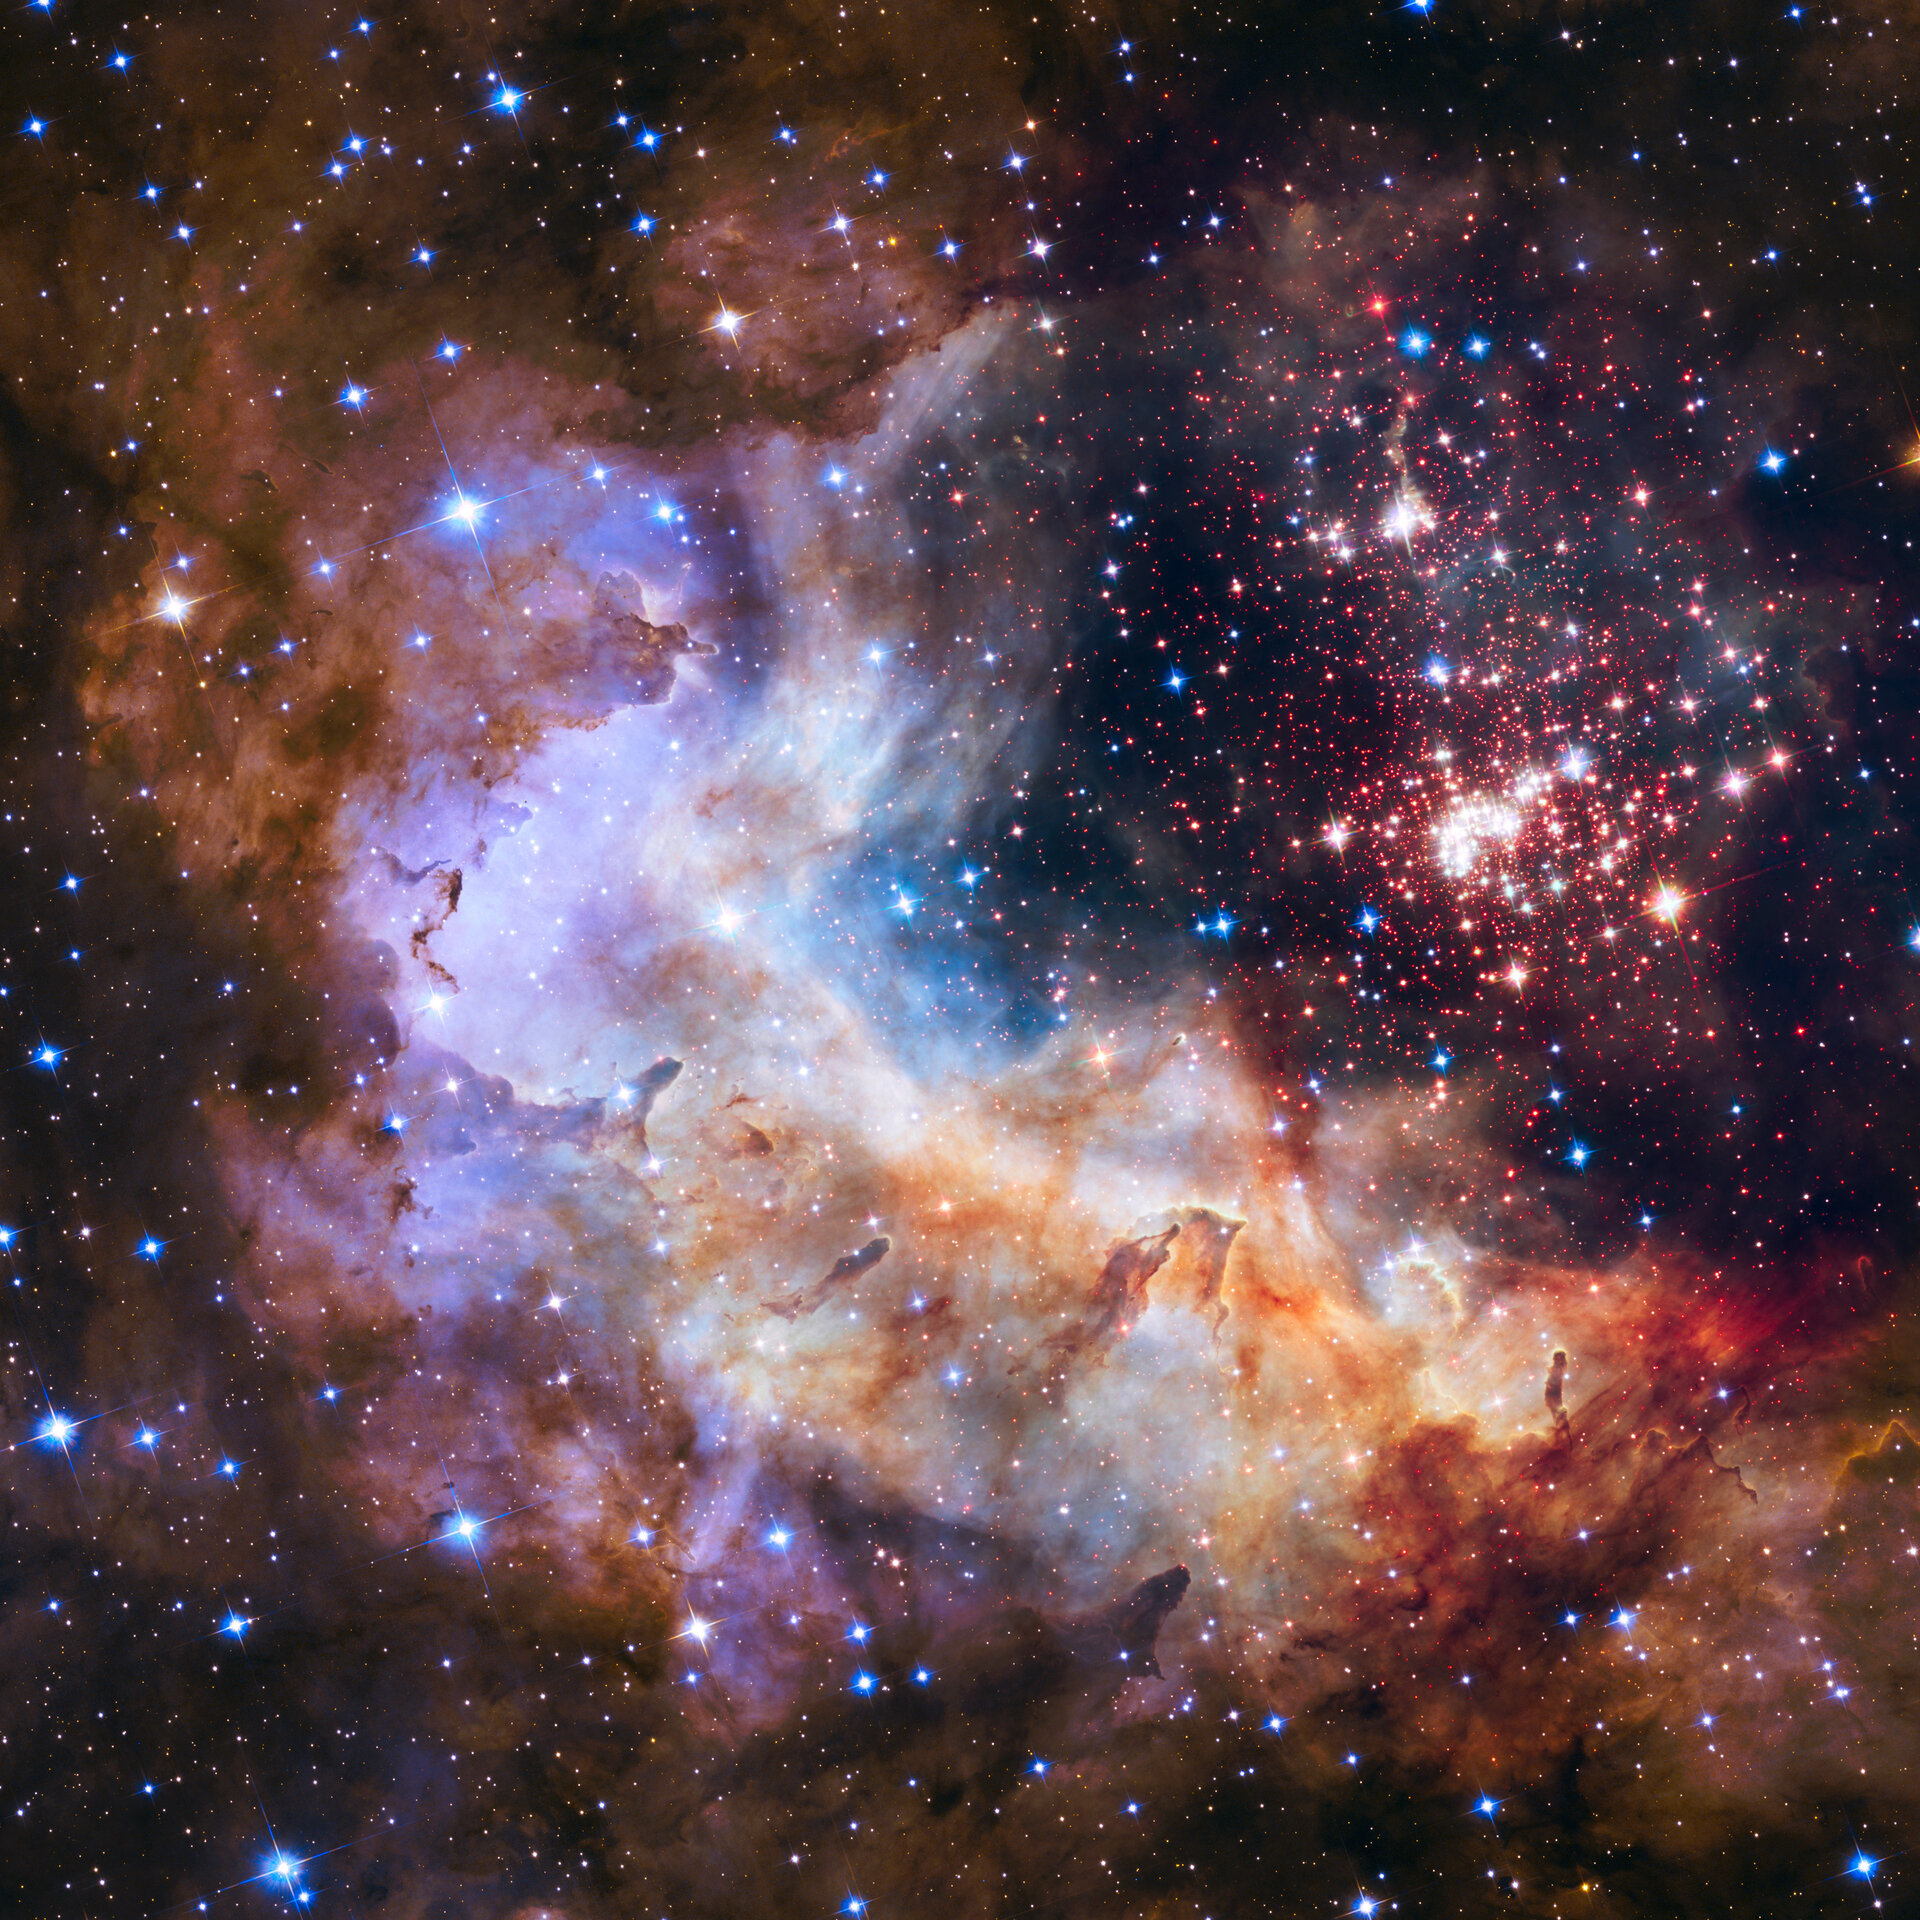 Celebrating Hubble’s silver anniversary